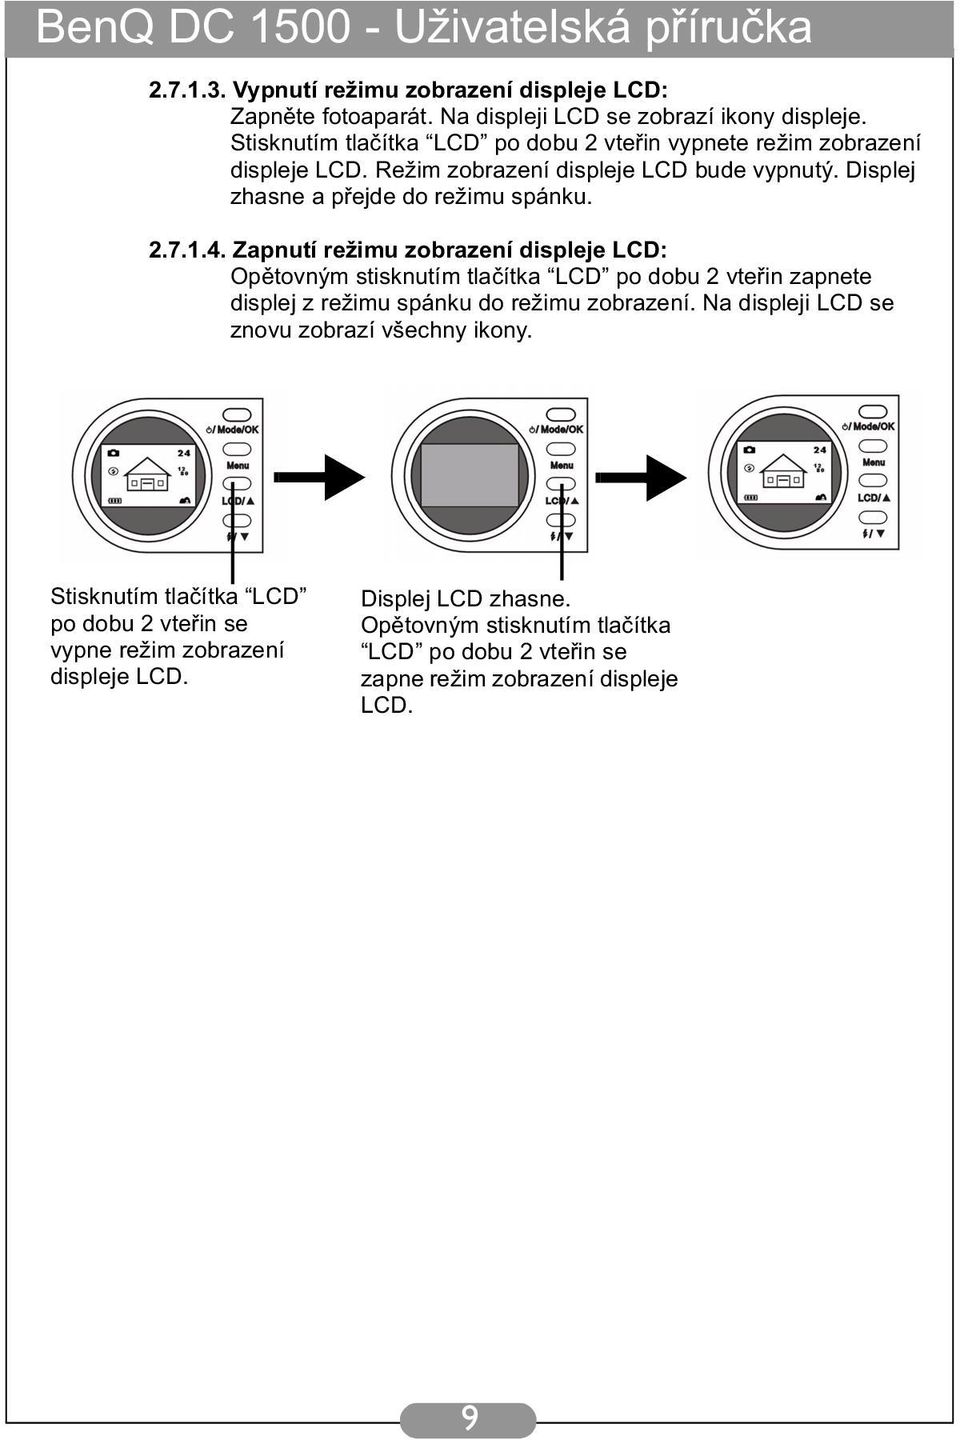 1.4. Zapnutí režimu zobrazení displeje LCD: Opětovným stisknutím tlačítka LCD po dobu 2 vteřin zapnete displej z režimu spánku do režimu zobrazení.